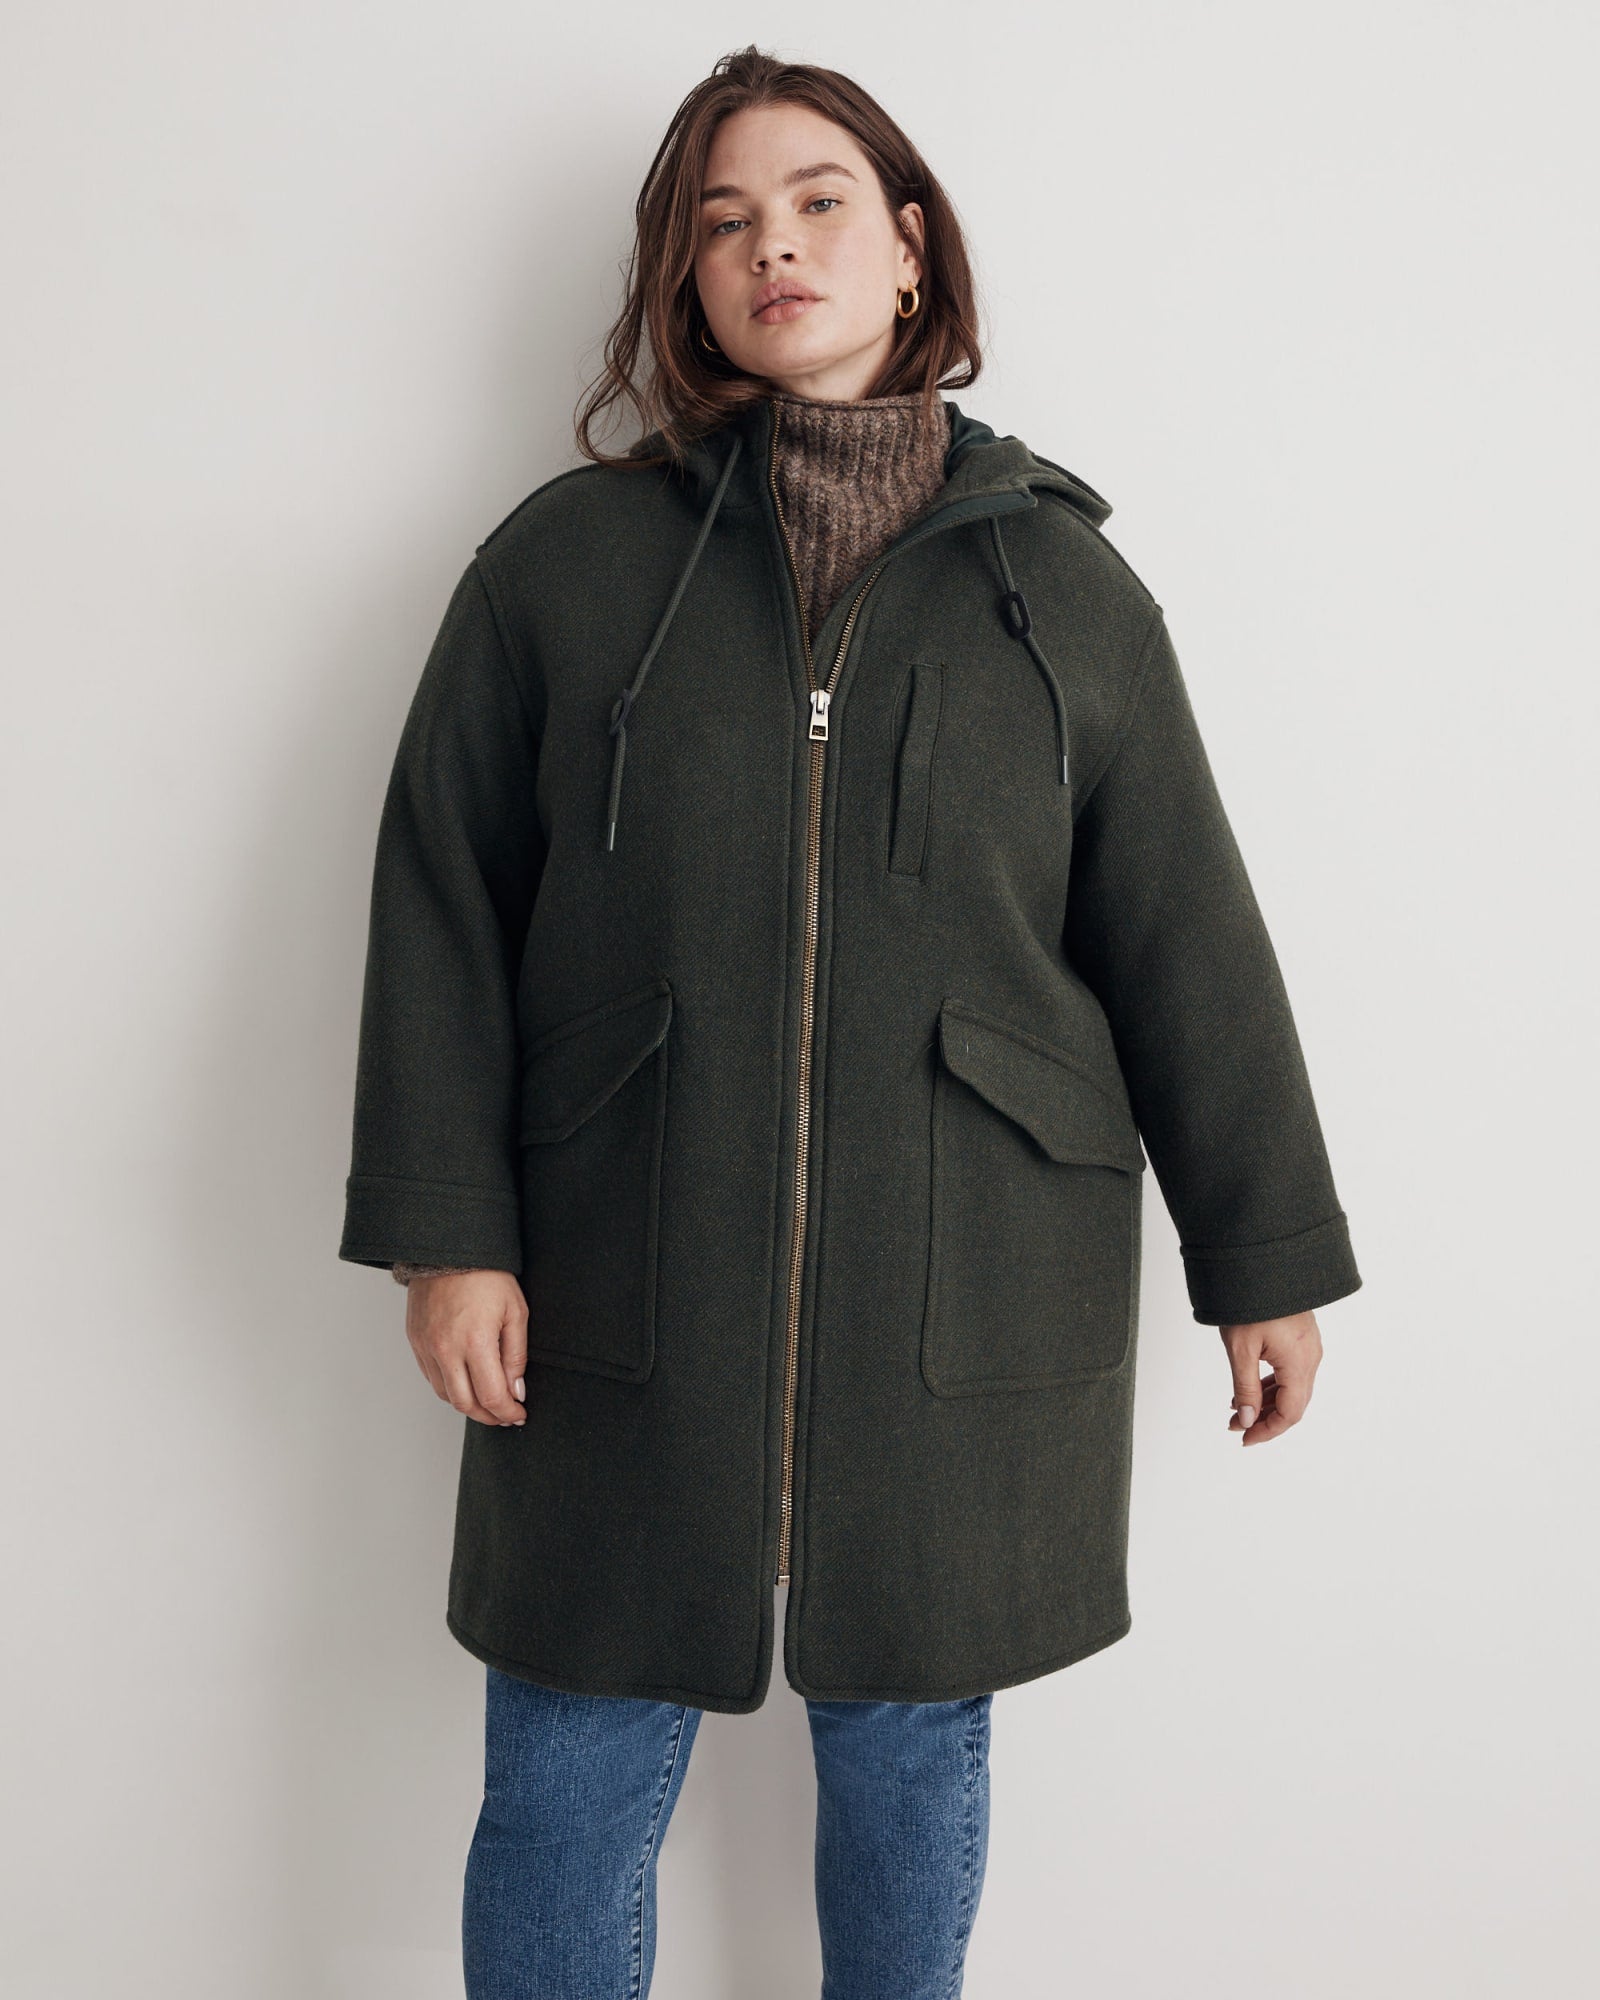 Insuluxe Wool Hooded Zip Coat | Heather Dark Pine